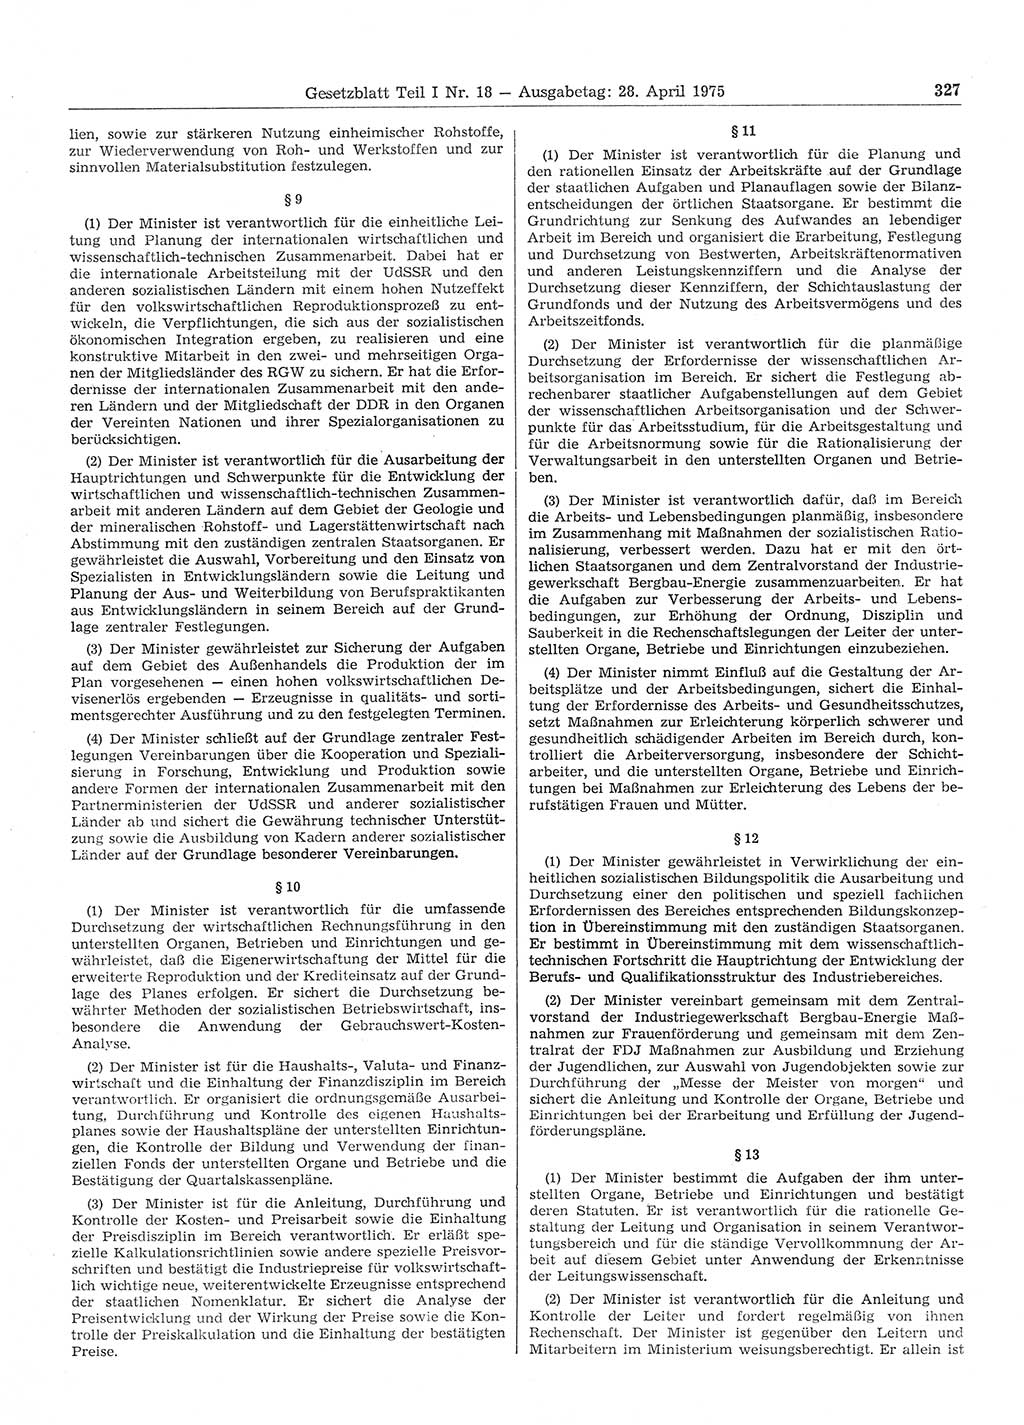 Gesetzblatt (GBl.) der Deutschen Demokratischen Republik (DDR) Teil Ⅰ 1975, Seite 327 (GBl. DDR Ⅰ 1975, S. 327)